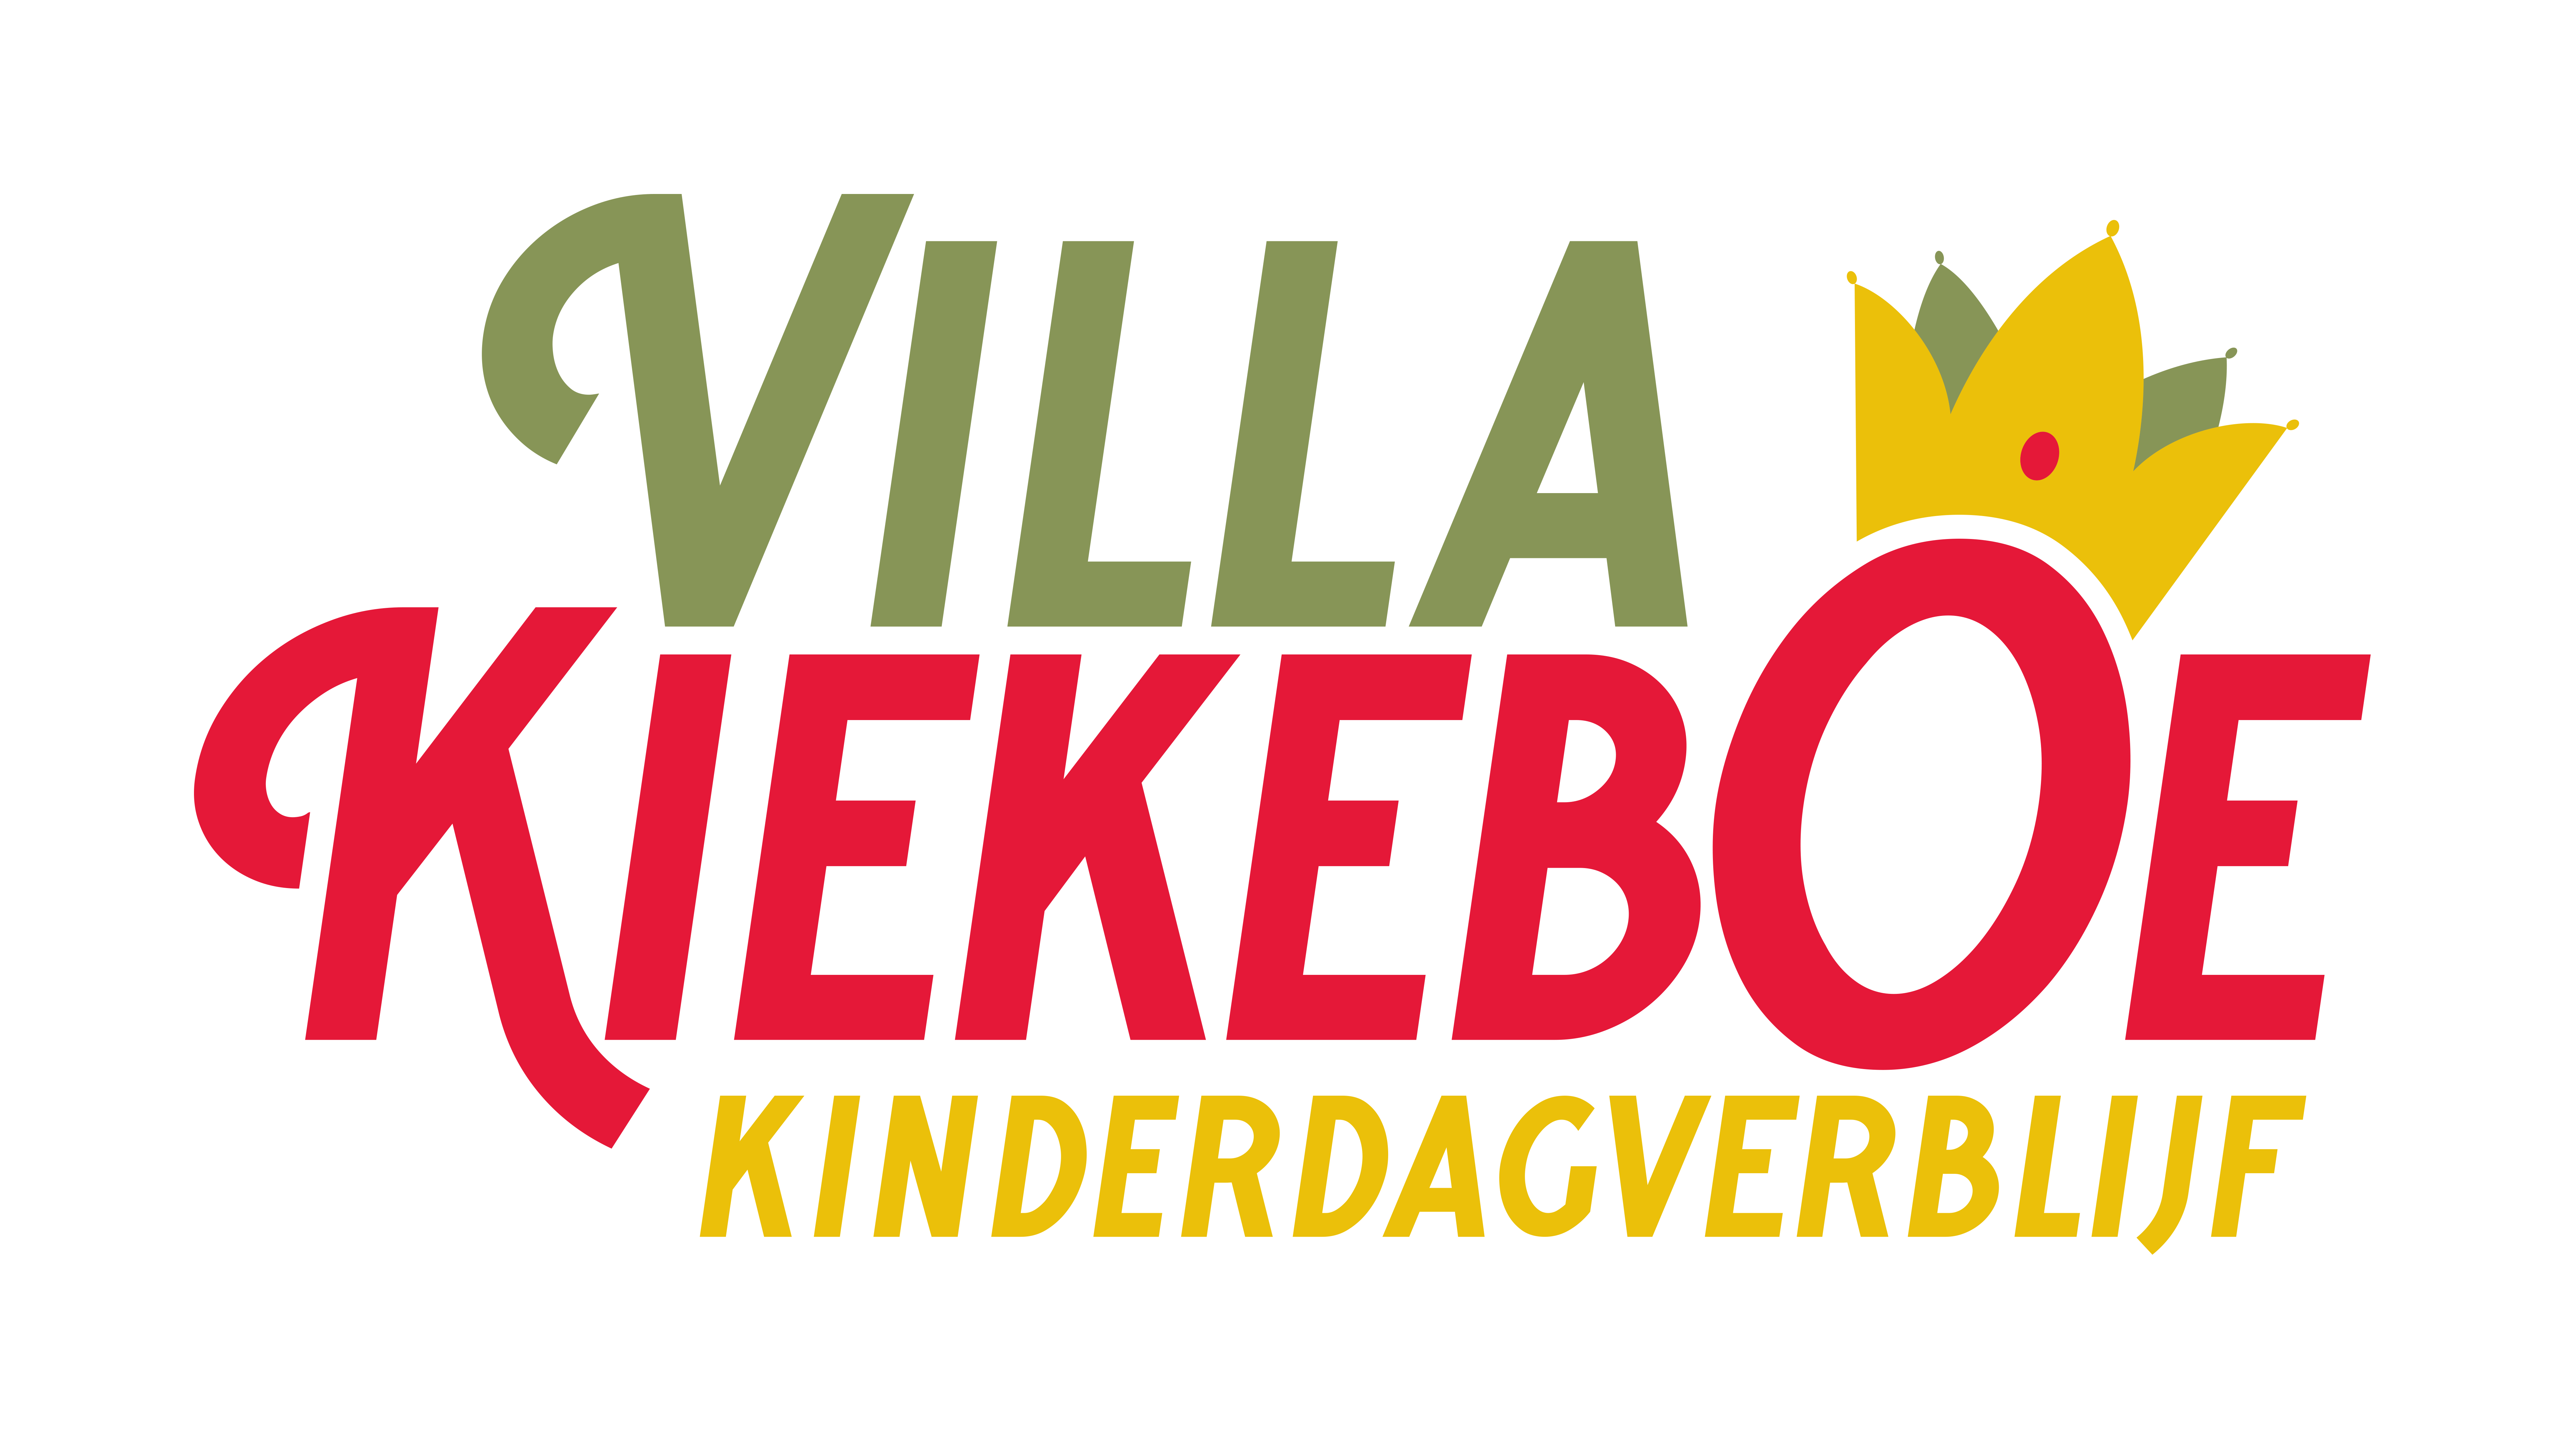 Kinderdagverblij Villa Kiekeboe